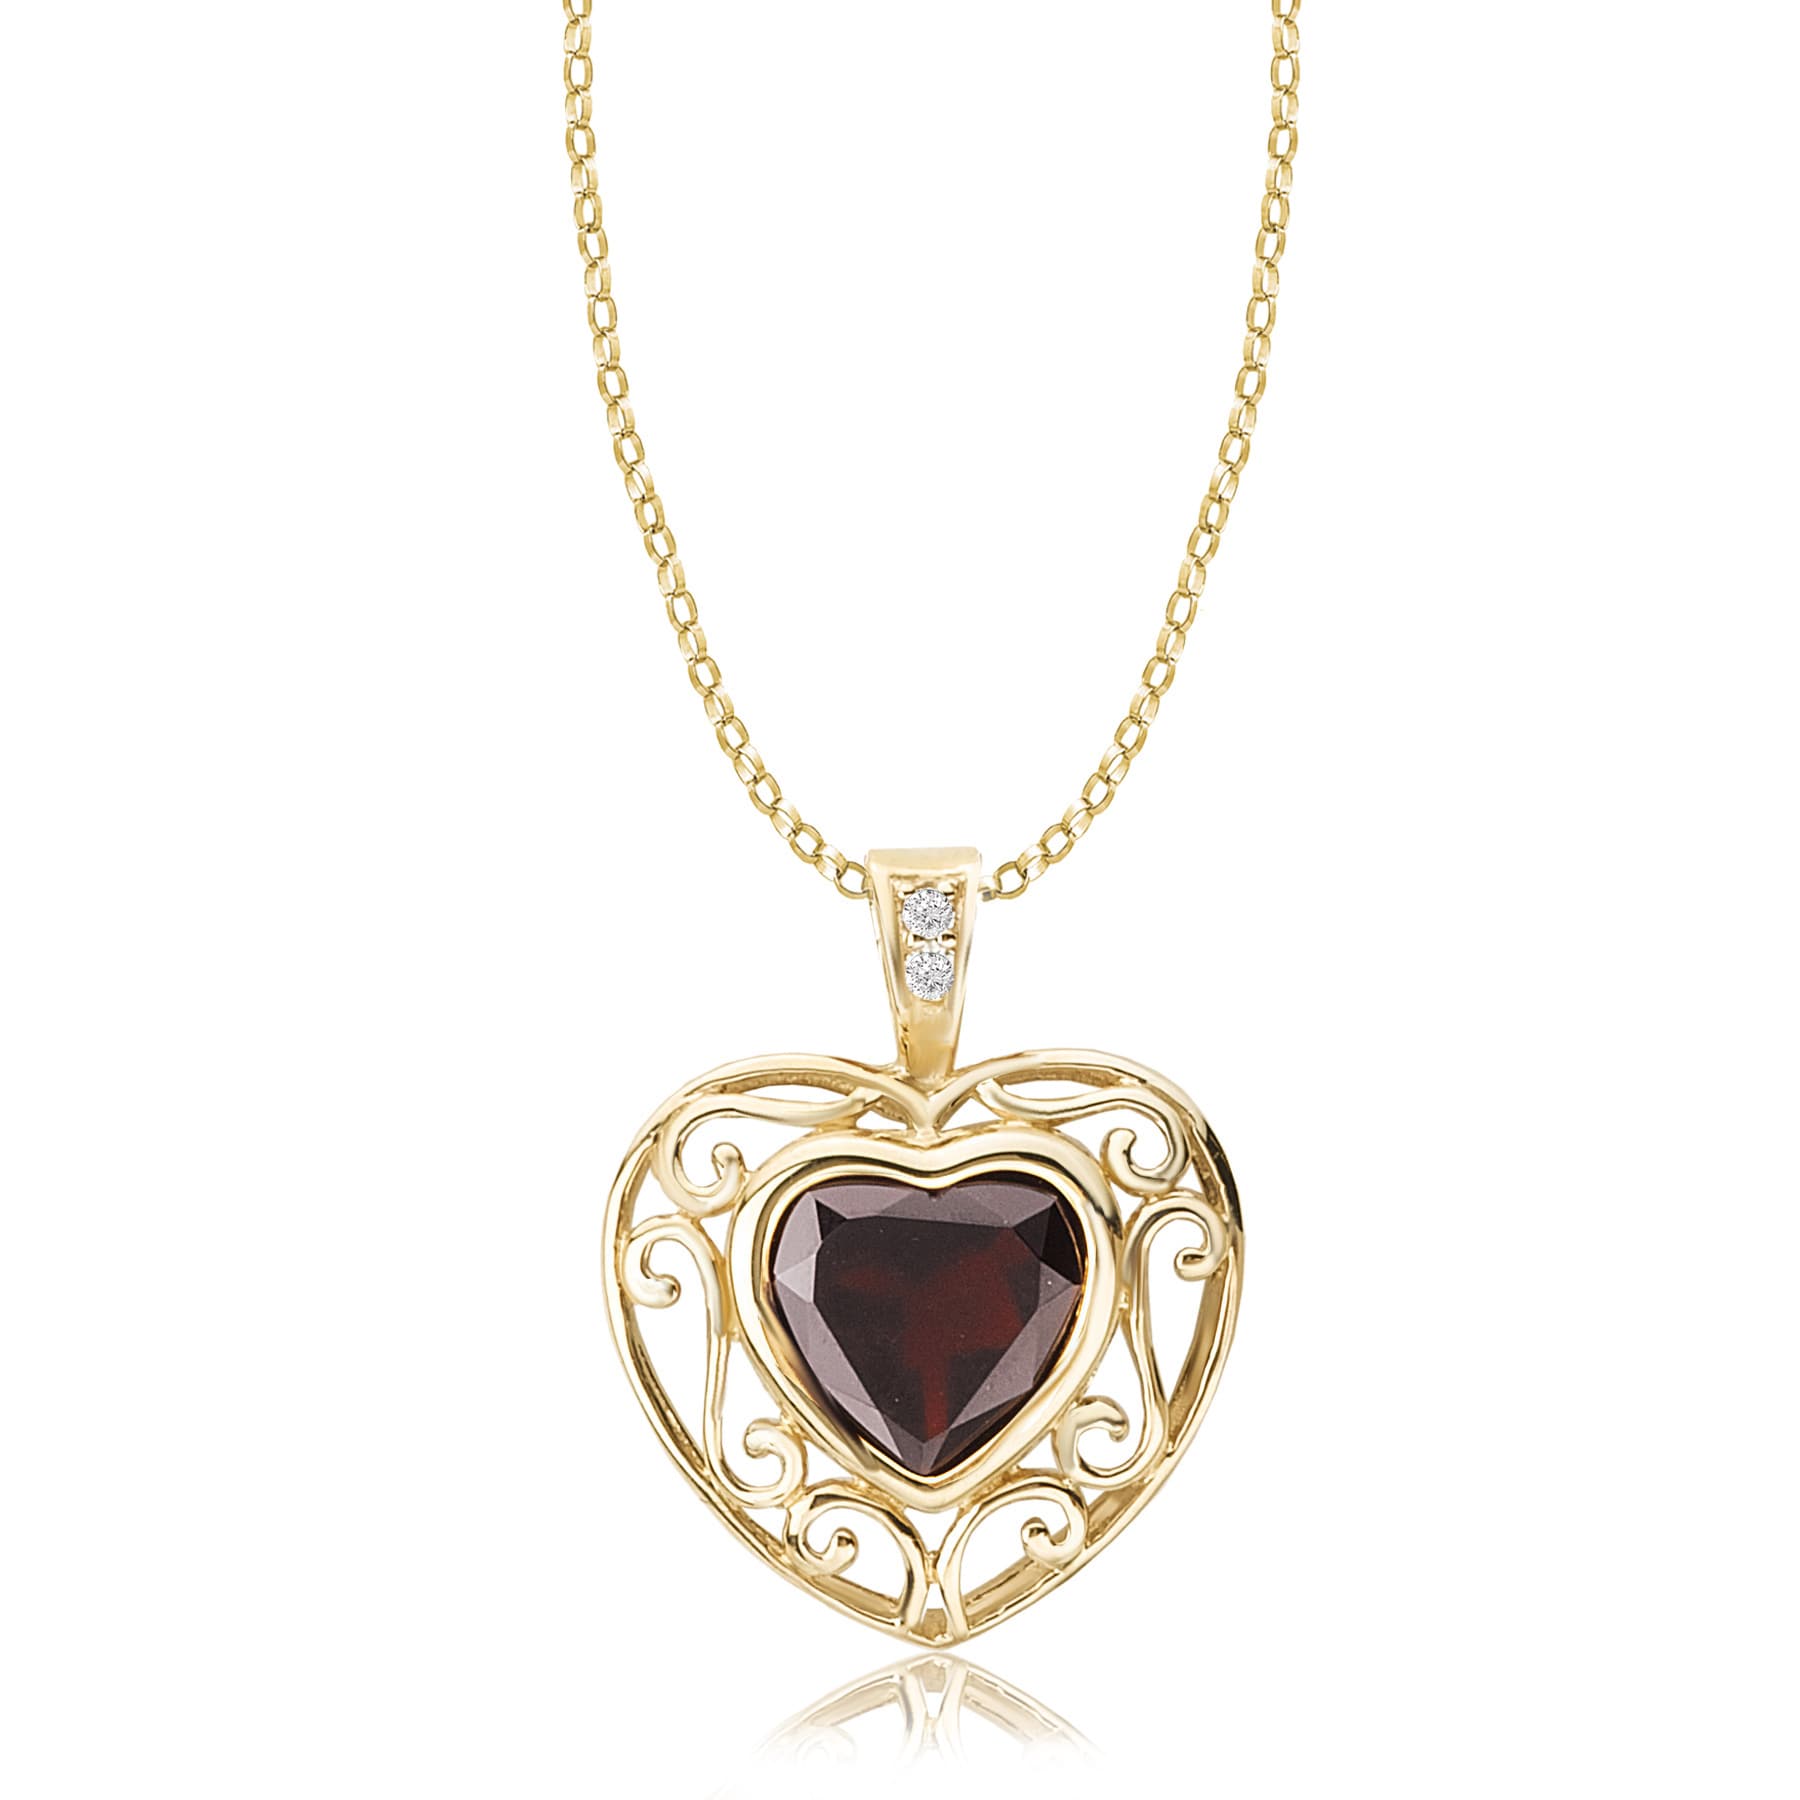 Heart Shaped Garnet Pendant for Women Unique Garnet Red Gemstone Pendant  Heart Shaped Necklace Women Anniversary Gift Handmade Pendant - Etsy